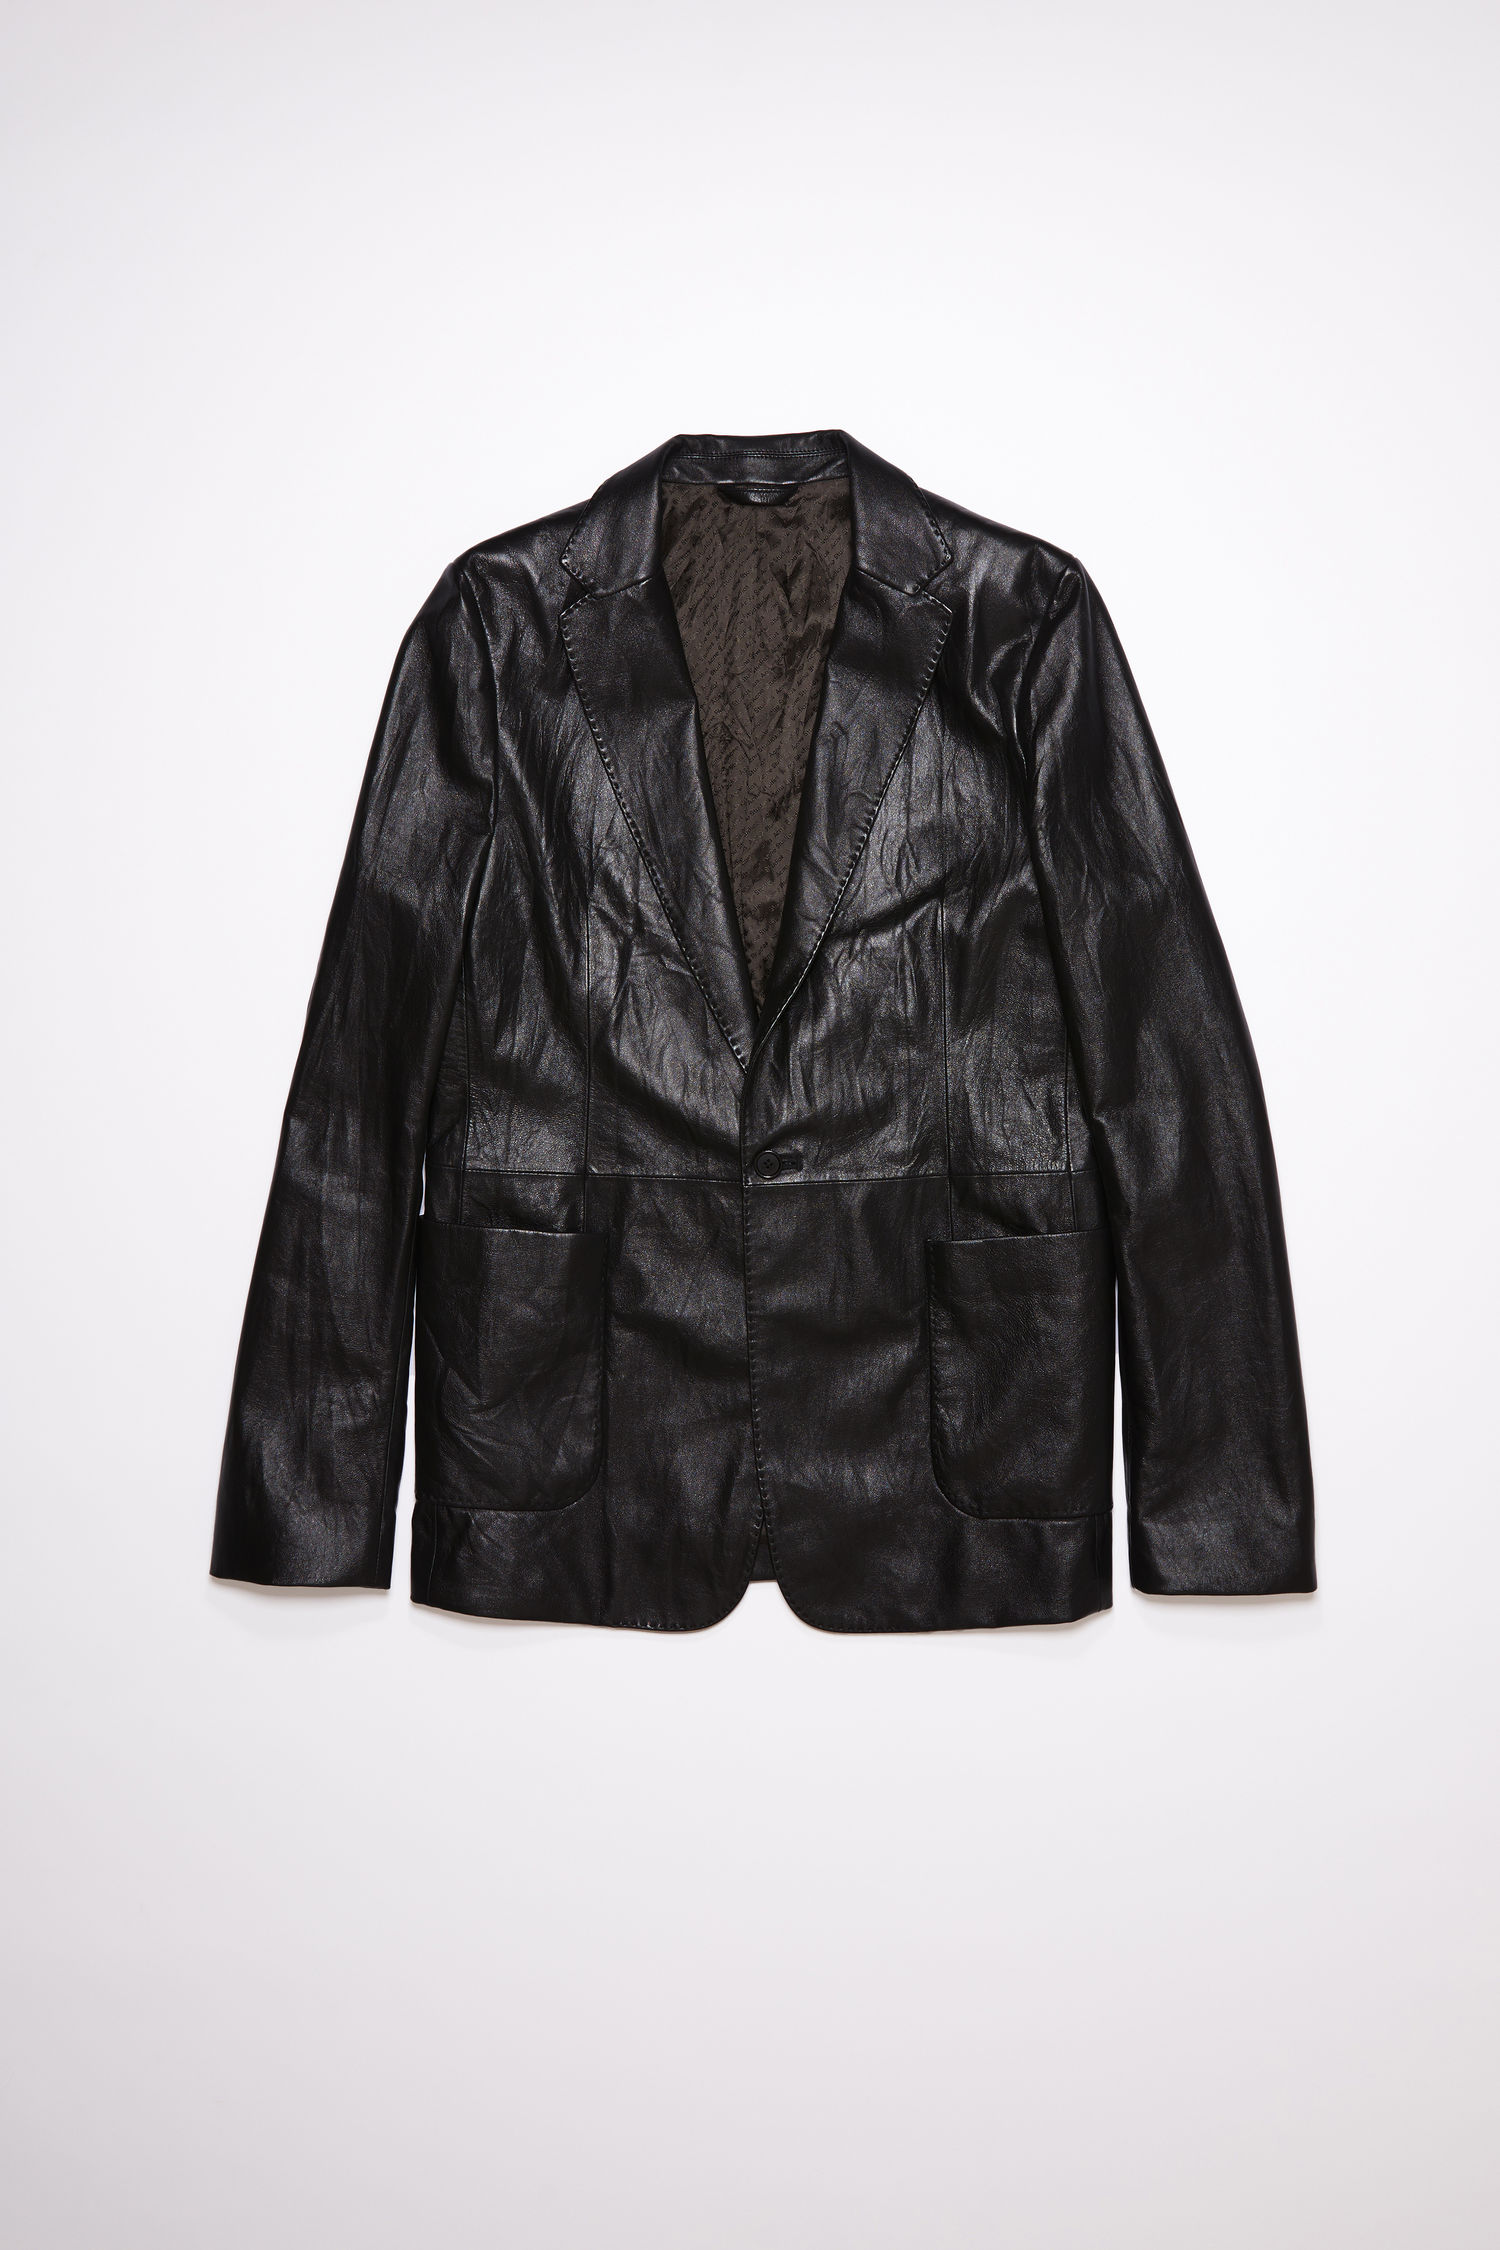 acnestudios.com | Leather suit jacket